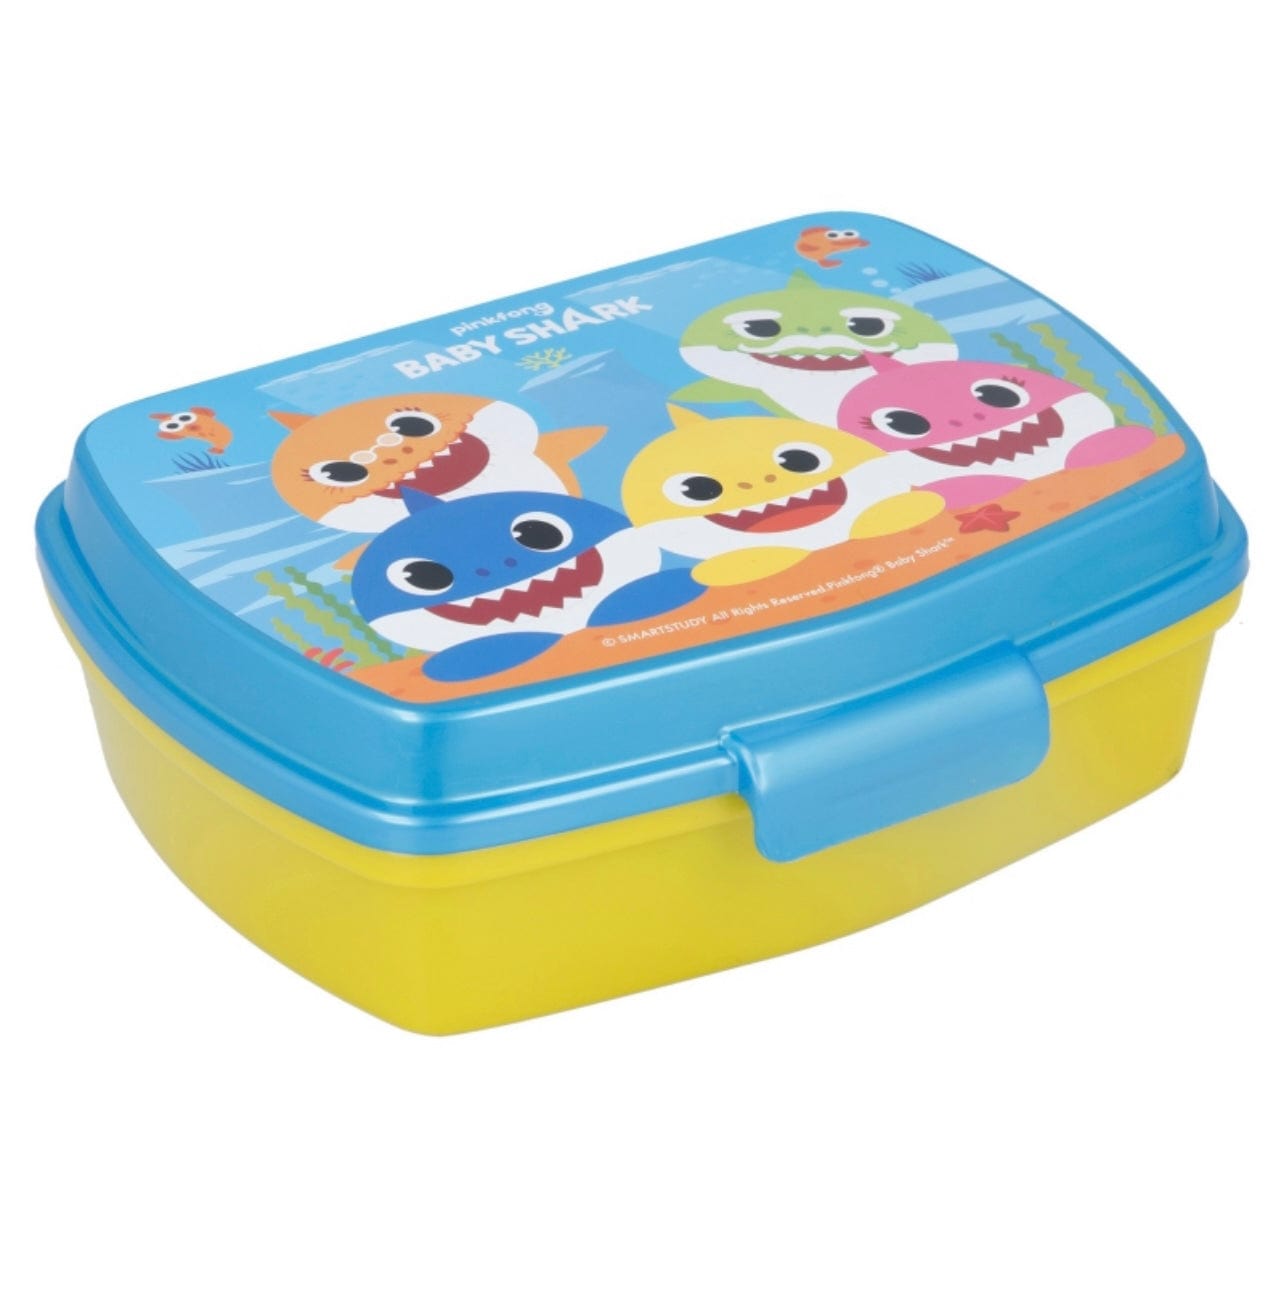 Baby Shark Lunch Box - Kids Kitchen School Accessories